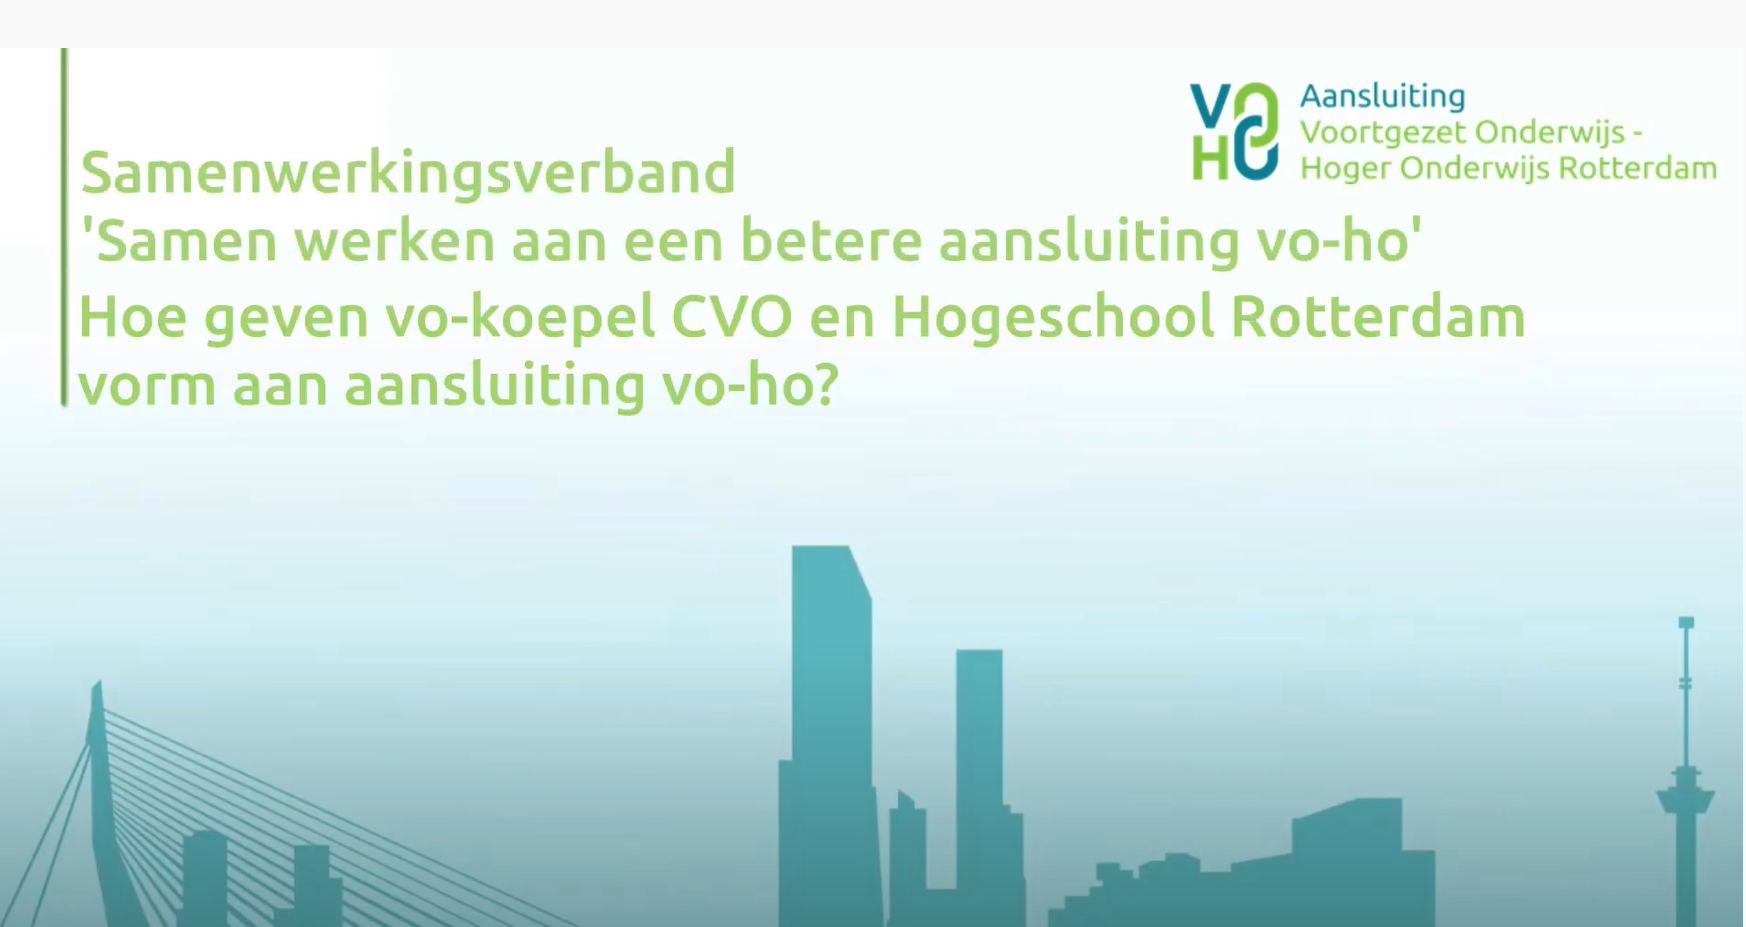 Hoe geven de vo-koepel CVO en Hogeschool Rotterdam vorm aan aansluiting vo-ho?